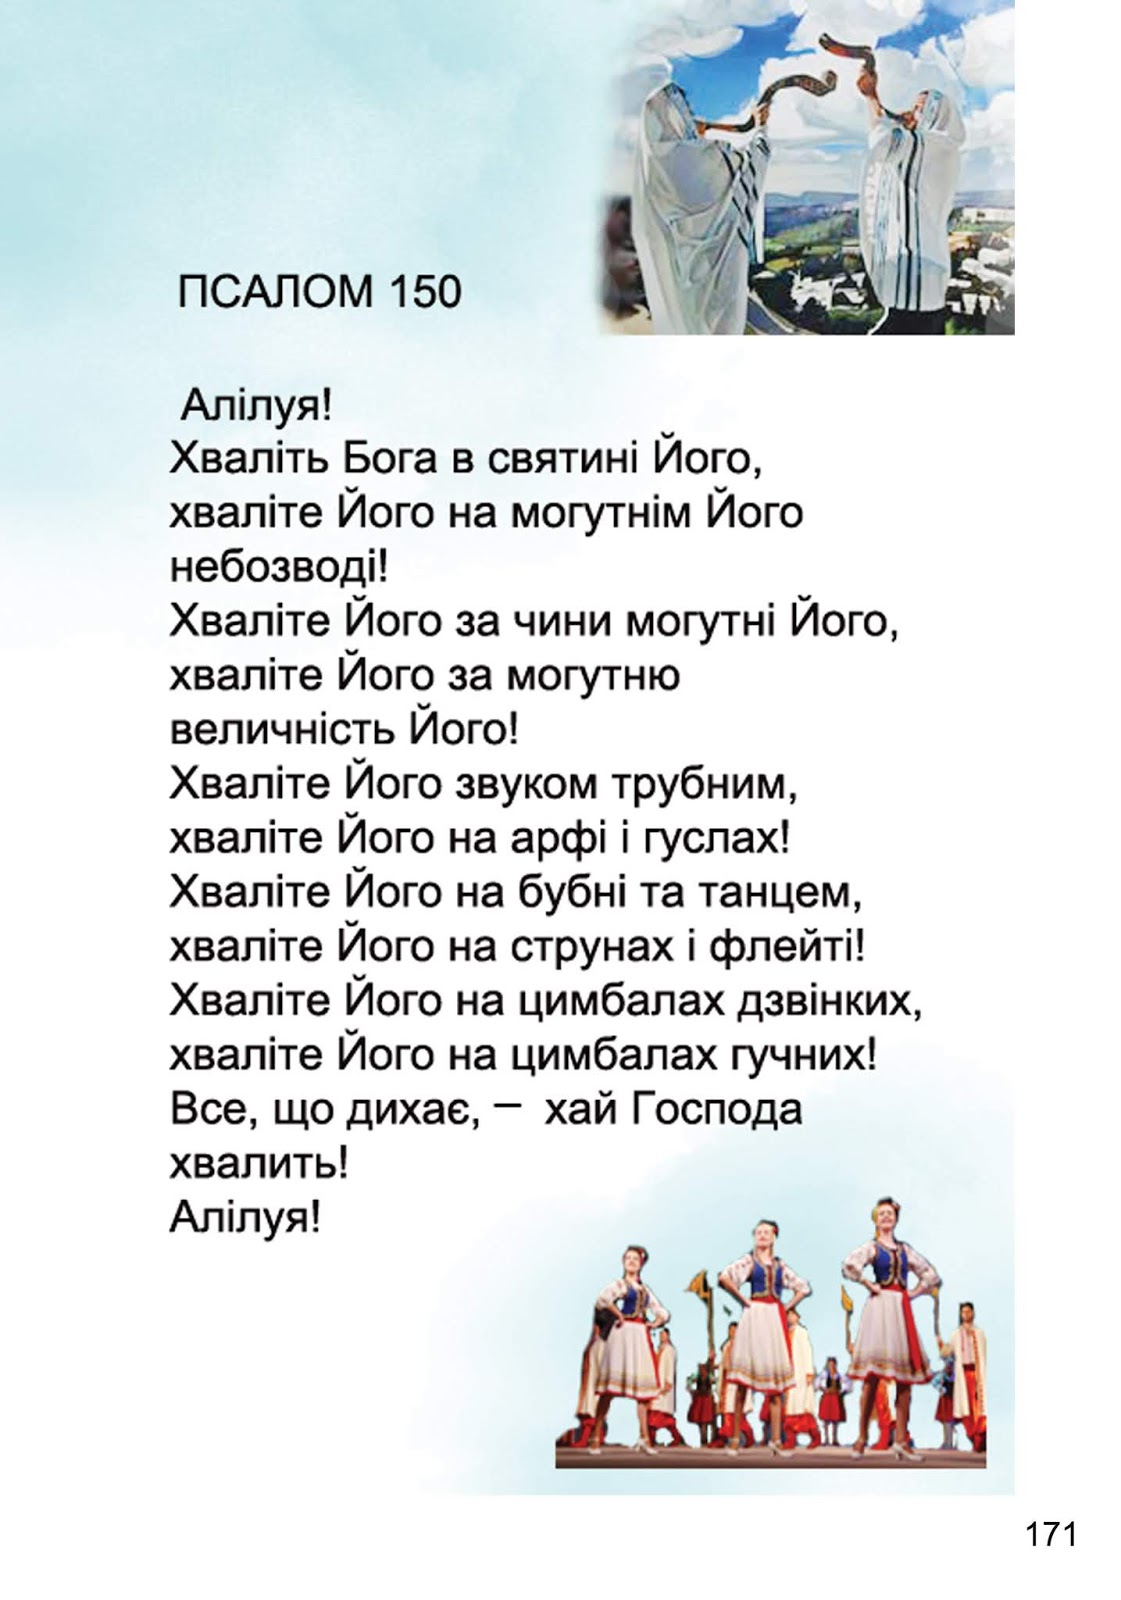 Псалом 150 читать. Псалом 150. Псалом 150 на русском. Псалом 150 на русском читать. 150 Псалом текст на русском языке читать.